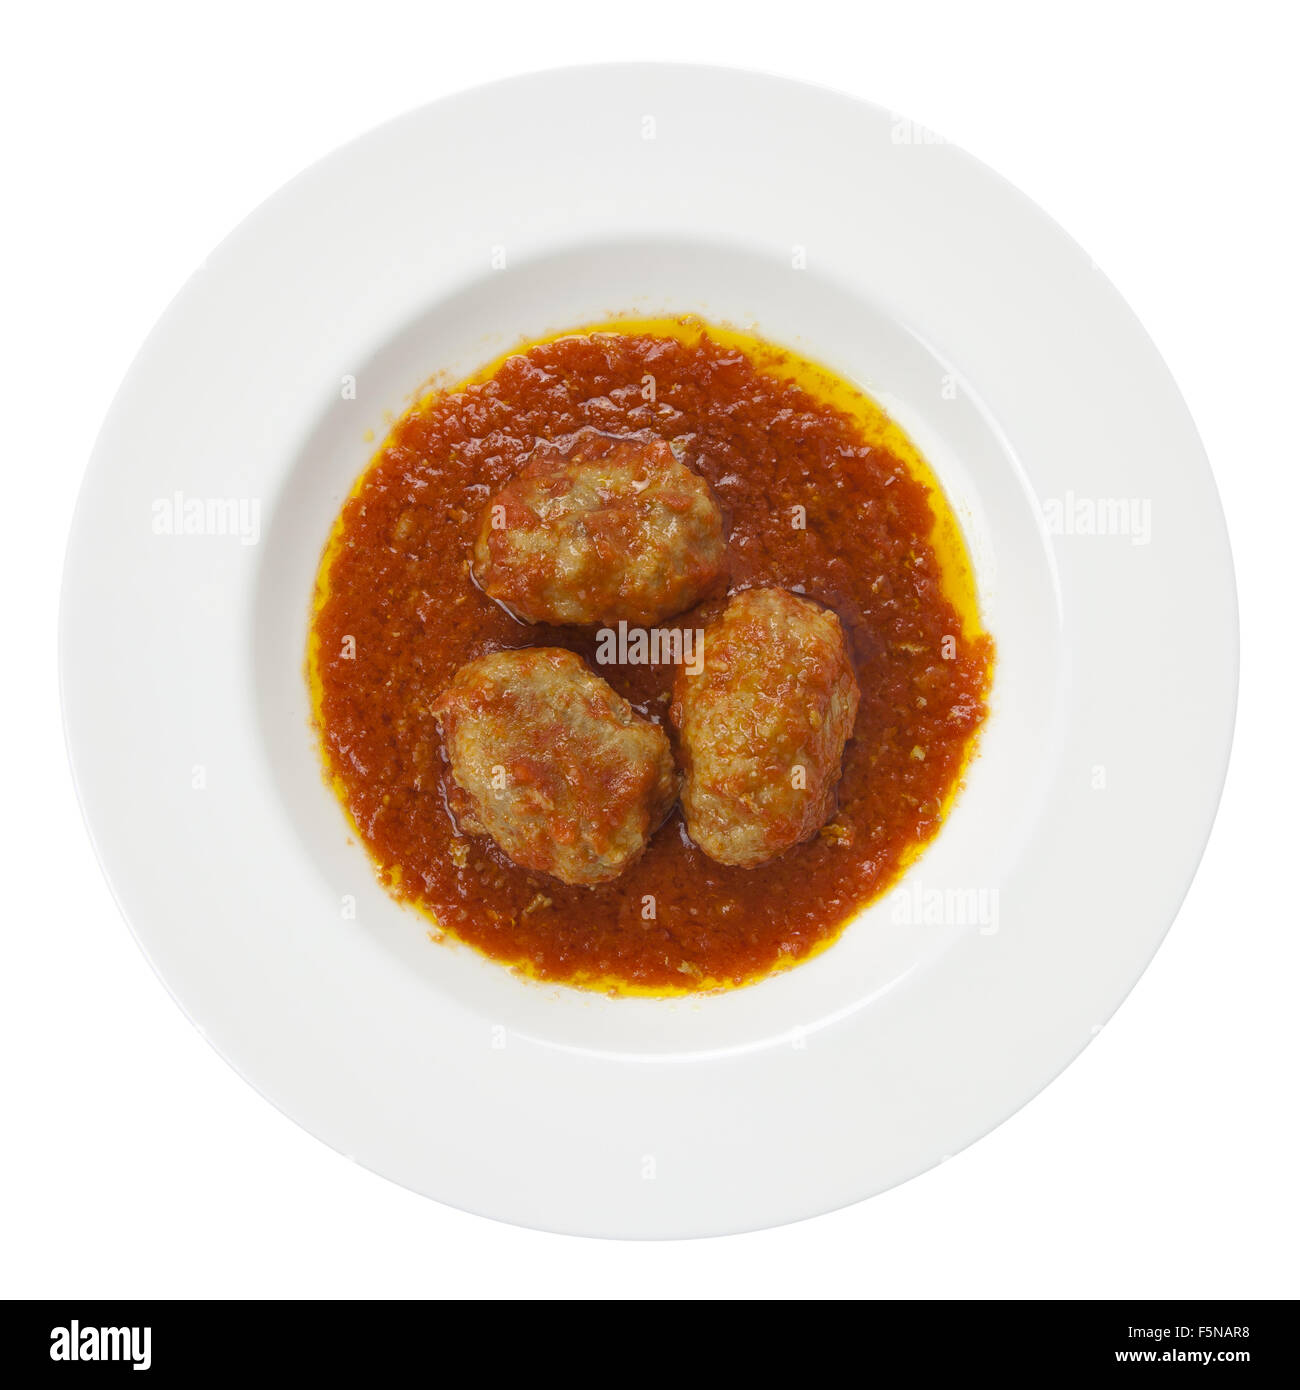 Frikadellen, bekannt als Albondigas in der spanischen Küche oder Polpette in der italienischen Küche, mit Tomatensauce, Olivenöl auf einem weißen Teller Stockfoto